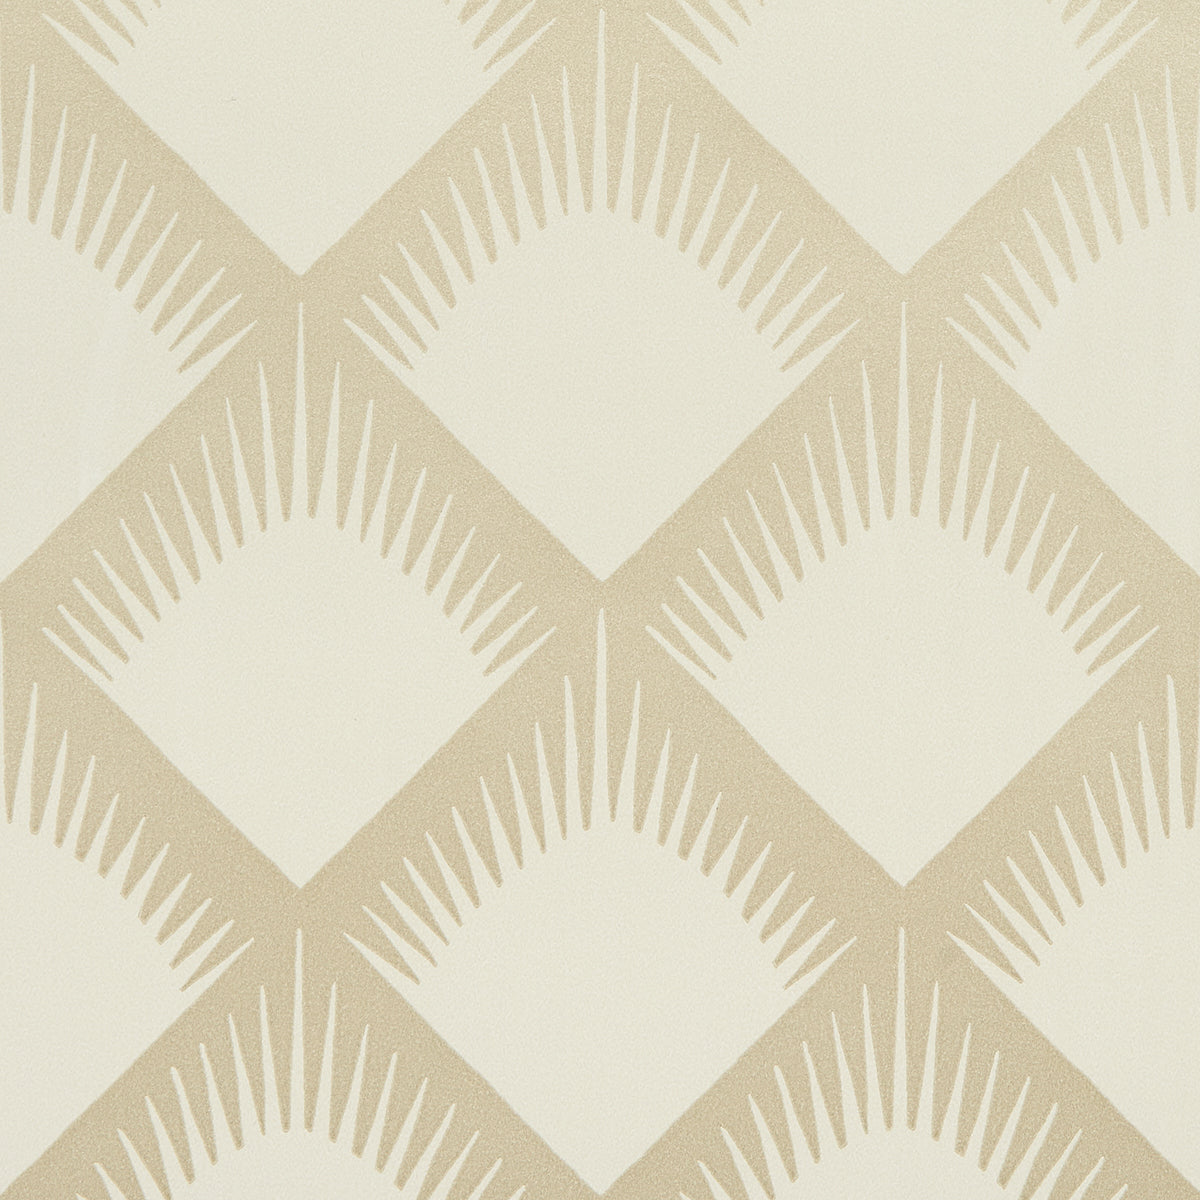 Purchase 5015041 | Maize, Soft Gold - Schumacher Wallpaper